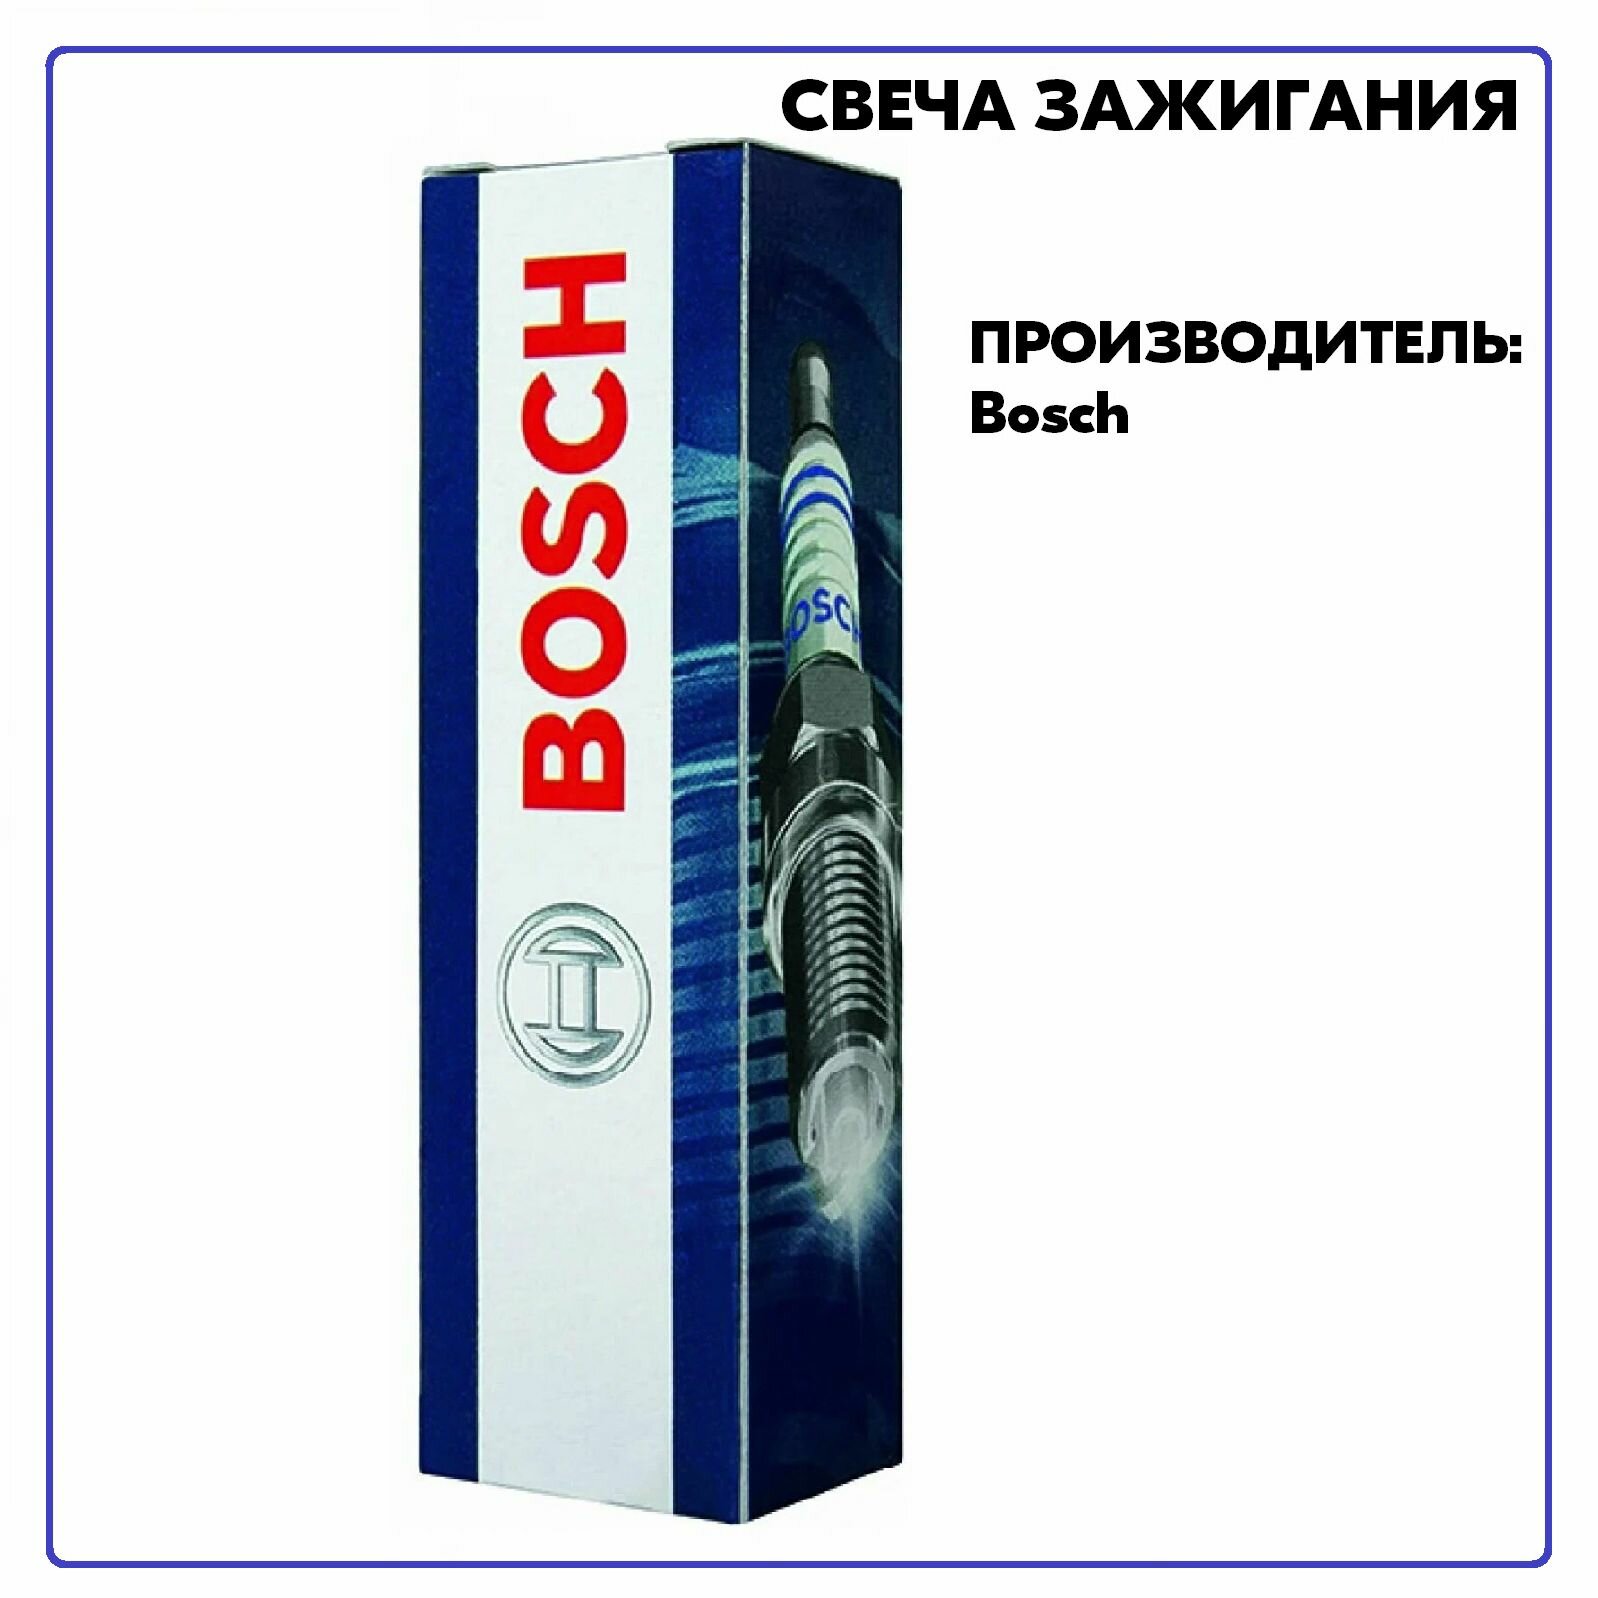 Свеча 242229657, производитель Bosch